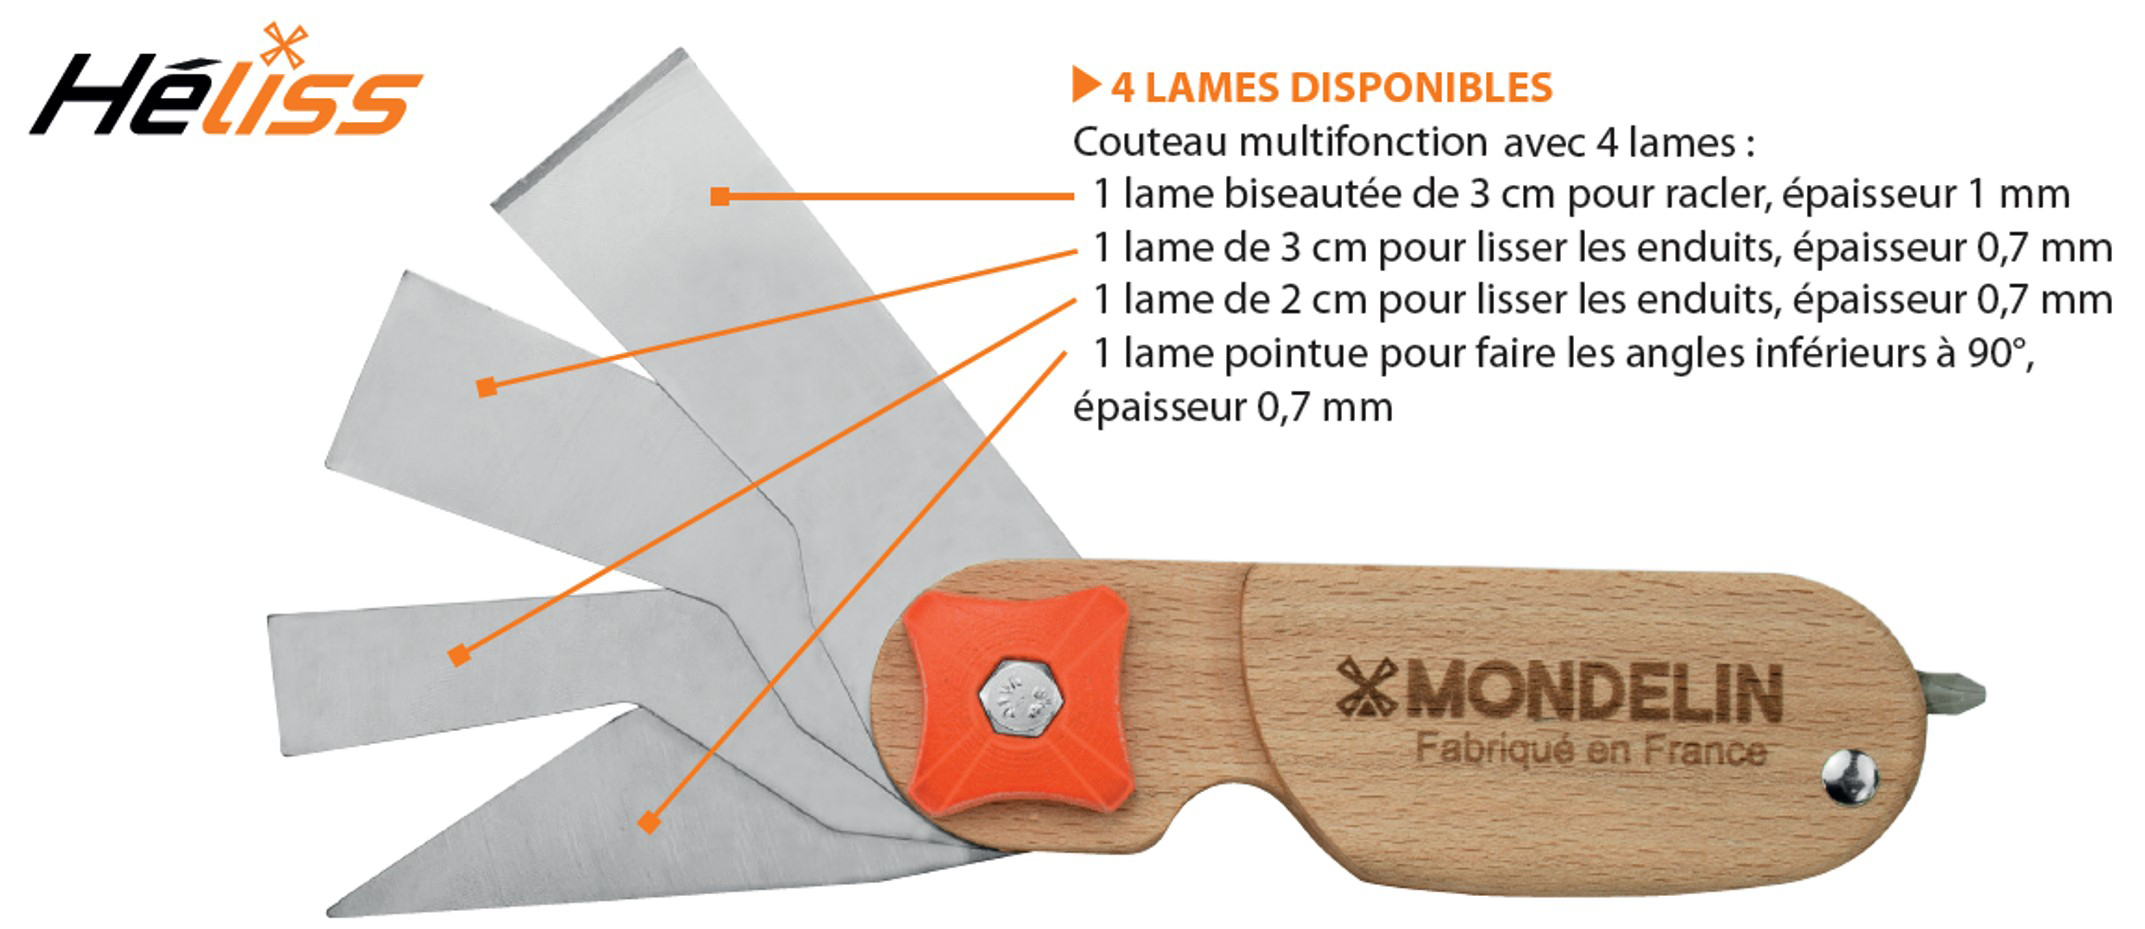 Composition de la lame Héliss - Source : Mondelin